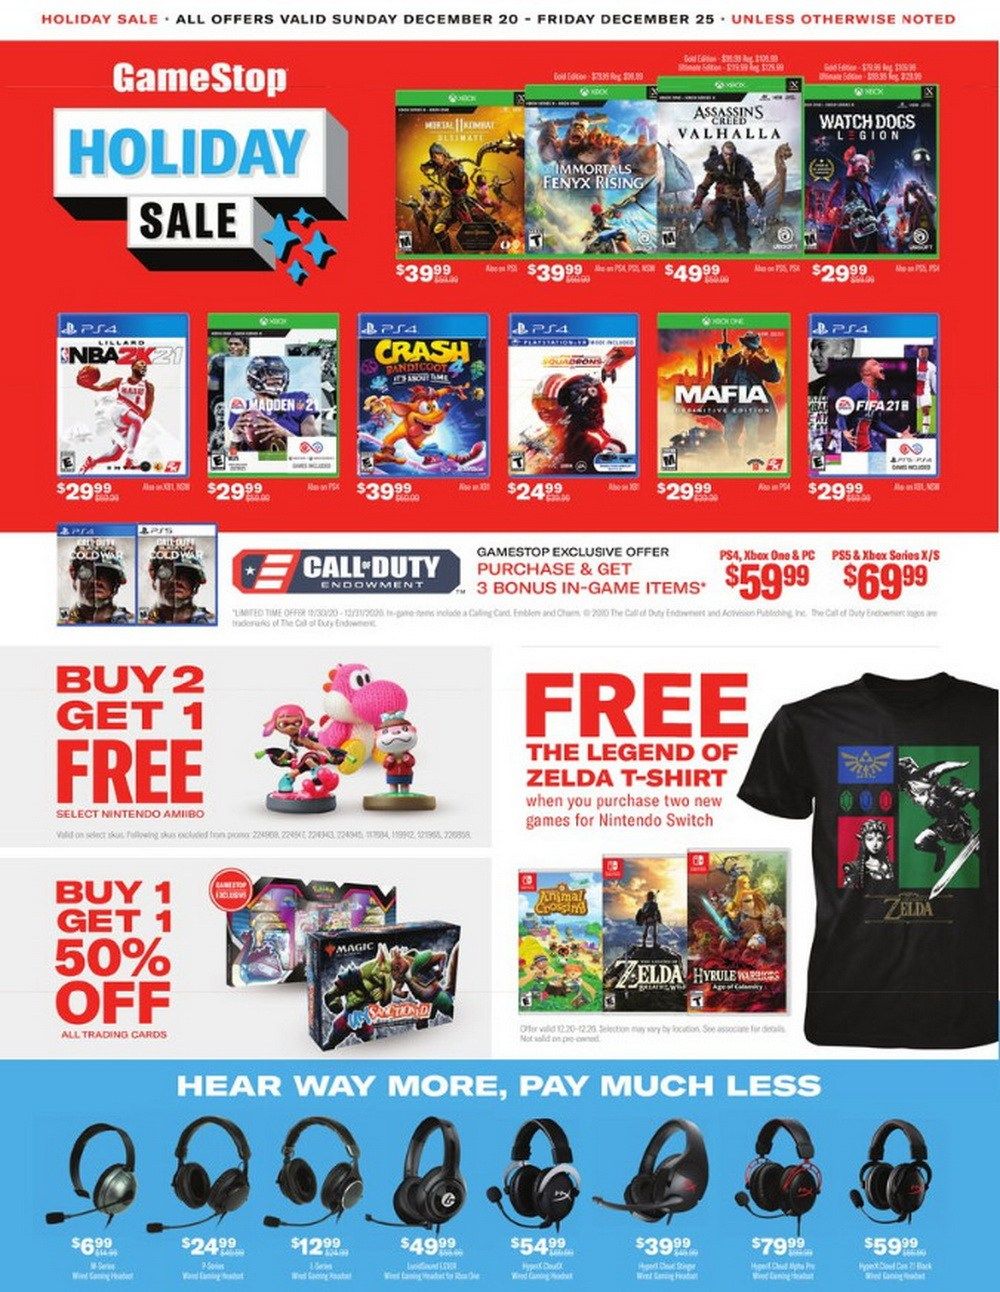 GameStop Holiday Sale Dec 20 Dec 25, 2020